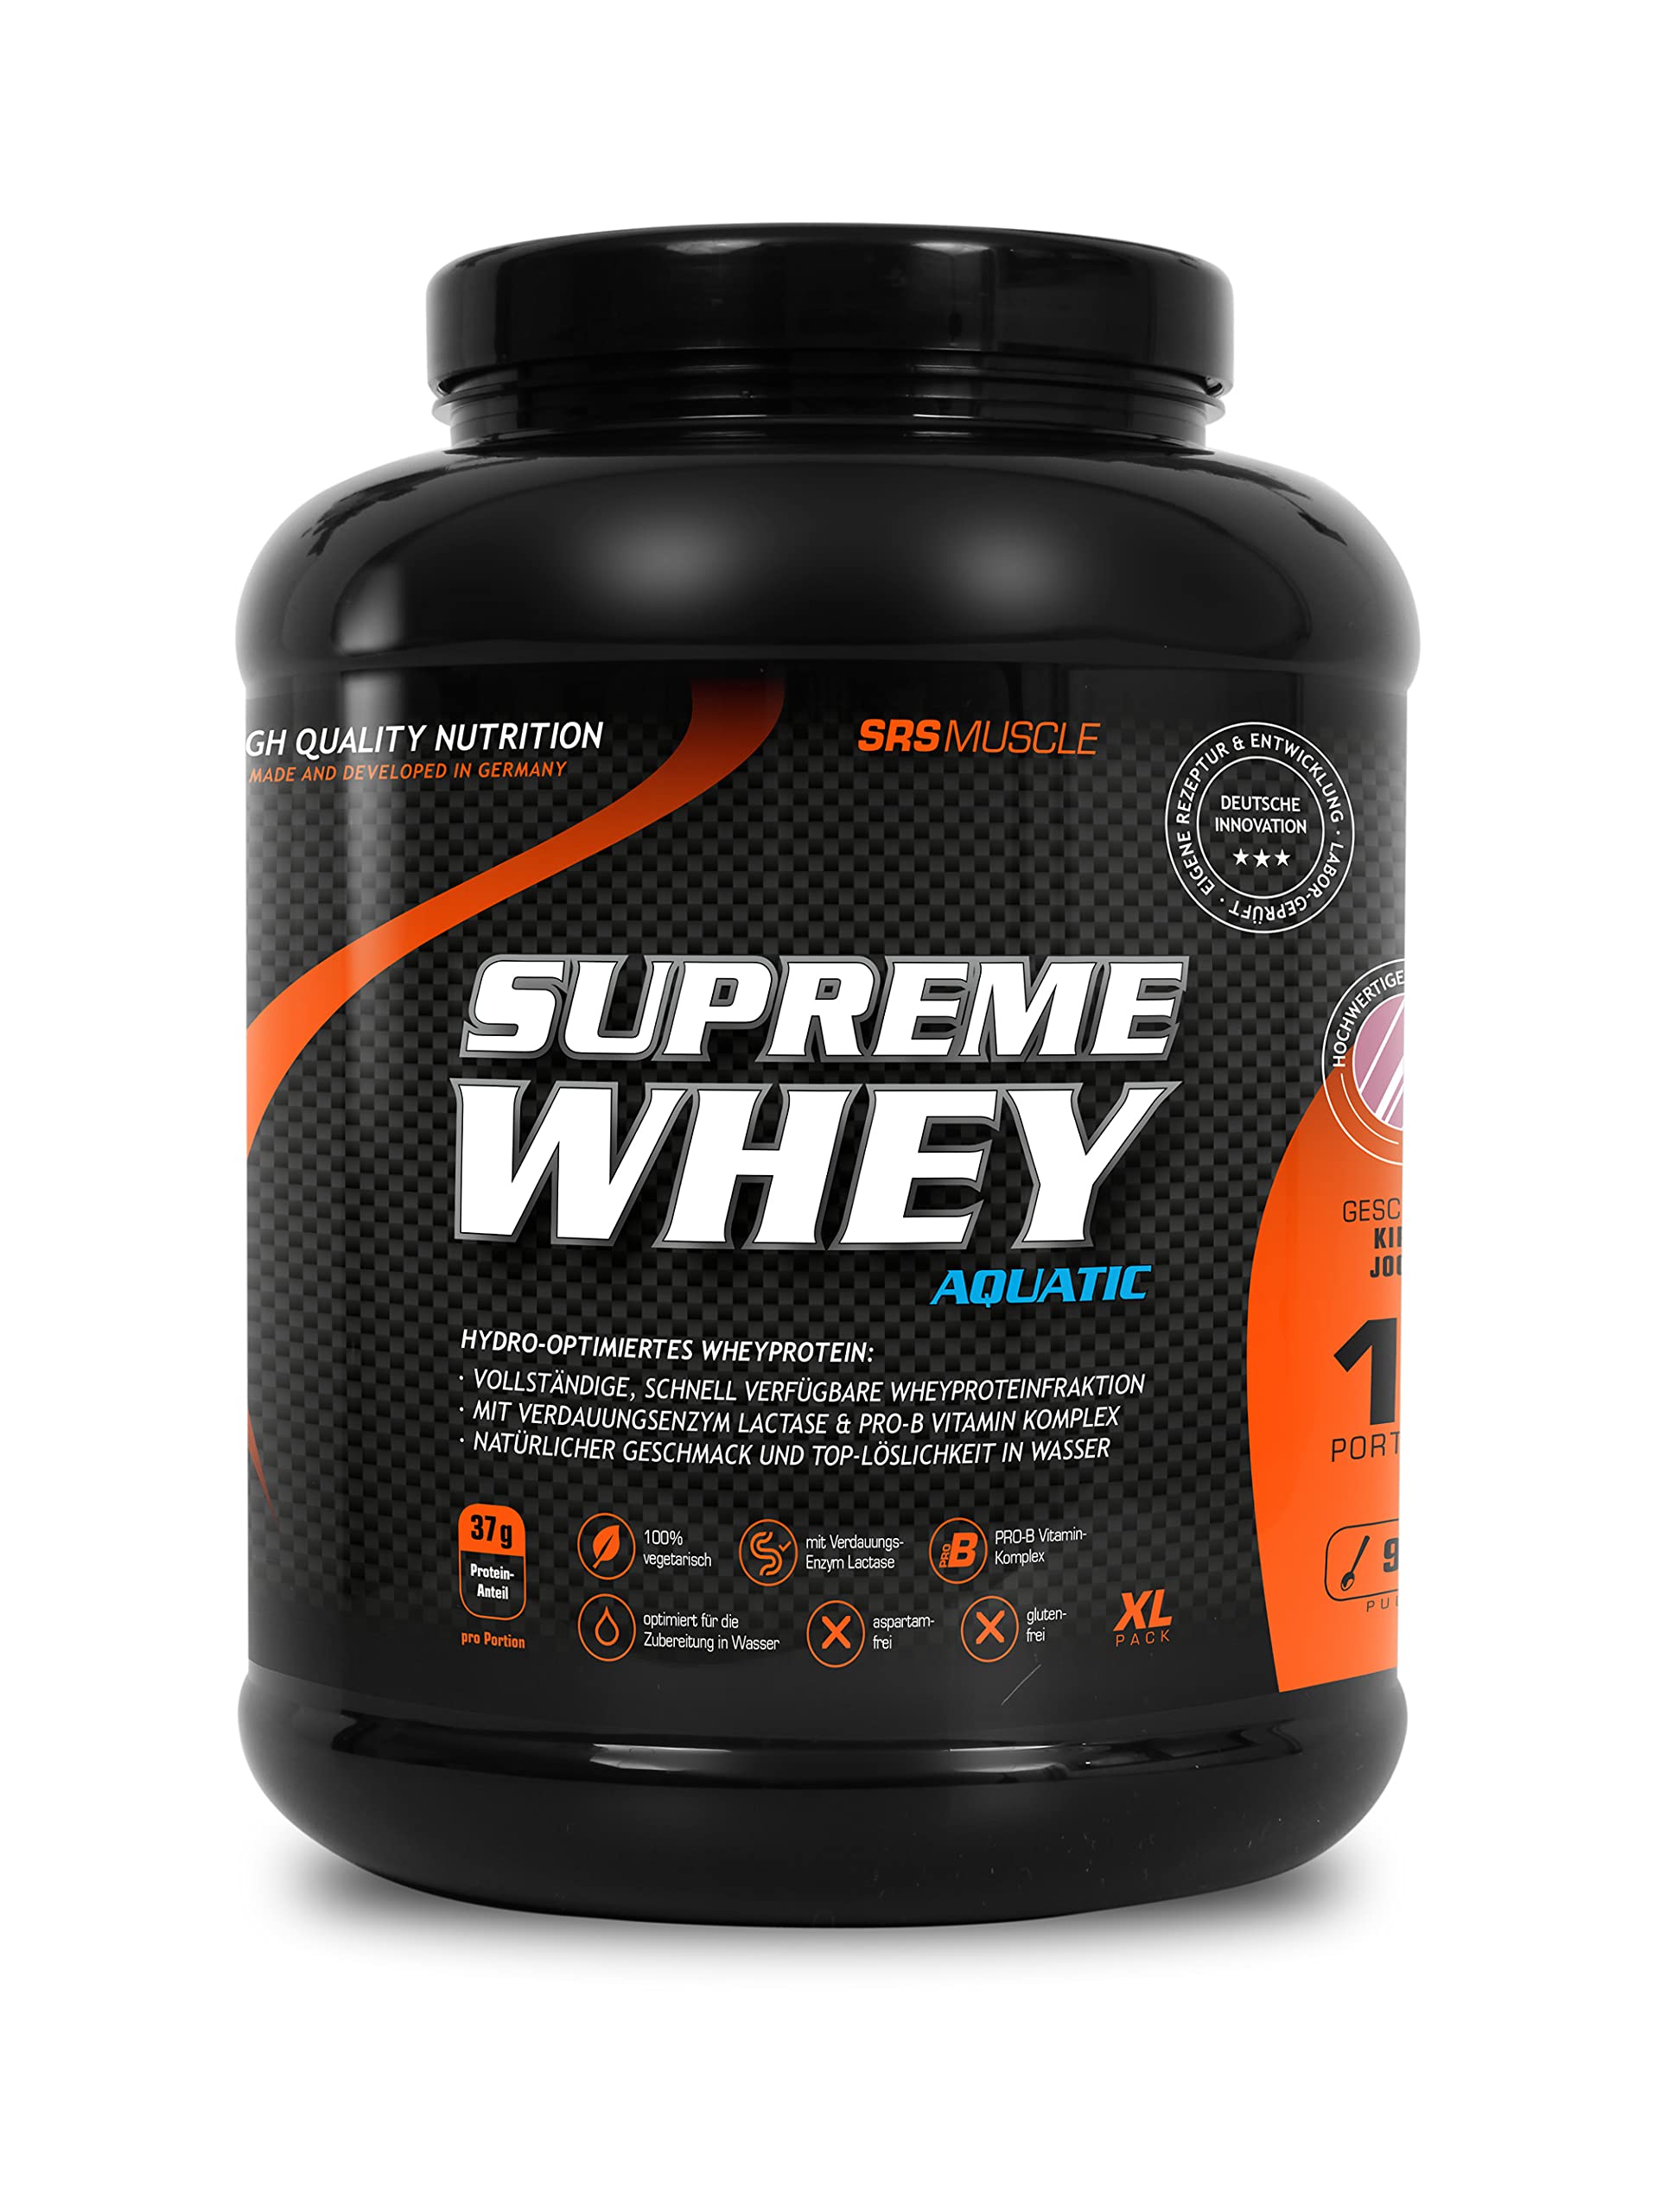 SRS Muscle - Supreme Whey XL, 900 g, Schoko | Hydro-optimized Whey Protein | mit Enzym Laktase und Pro-B Vitaminen | aspartamfrei | deutsche Premiumqualität